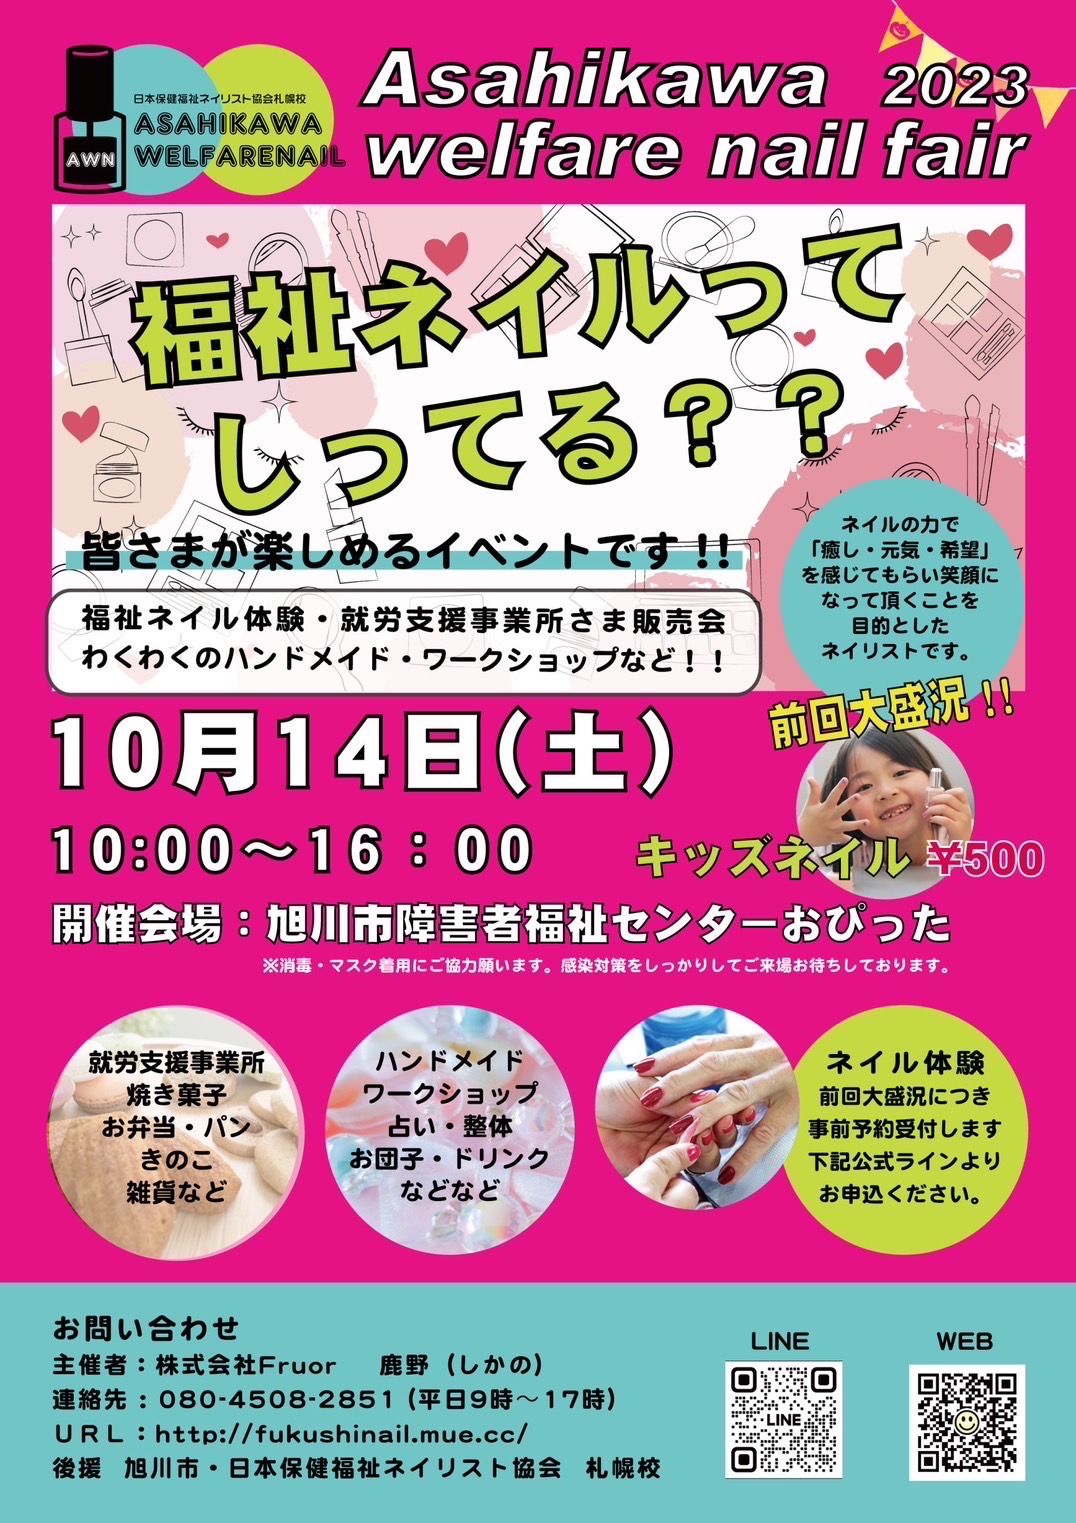 Asahikawa welfare nail fair 2023.10/14(土)10:00〜16:00 旭川市障害者福祉センターおぴった